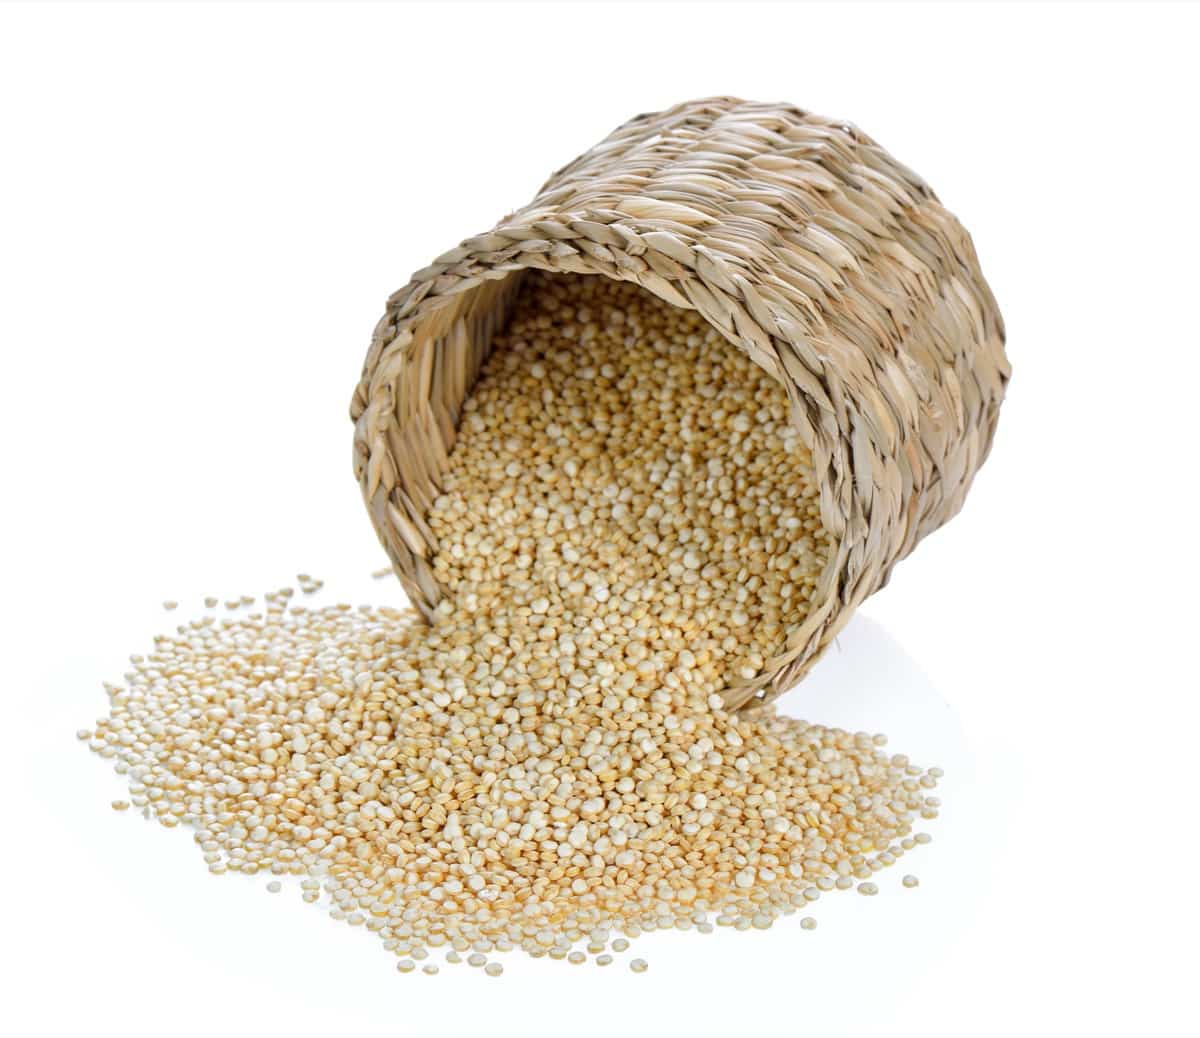 Project Report of Quinoa Farming1